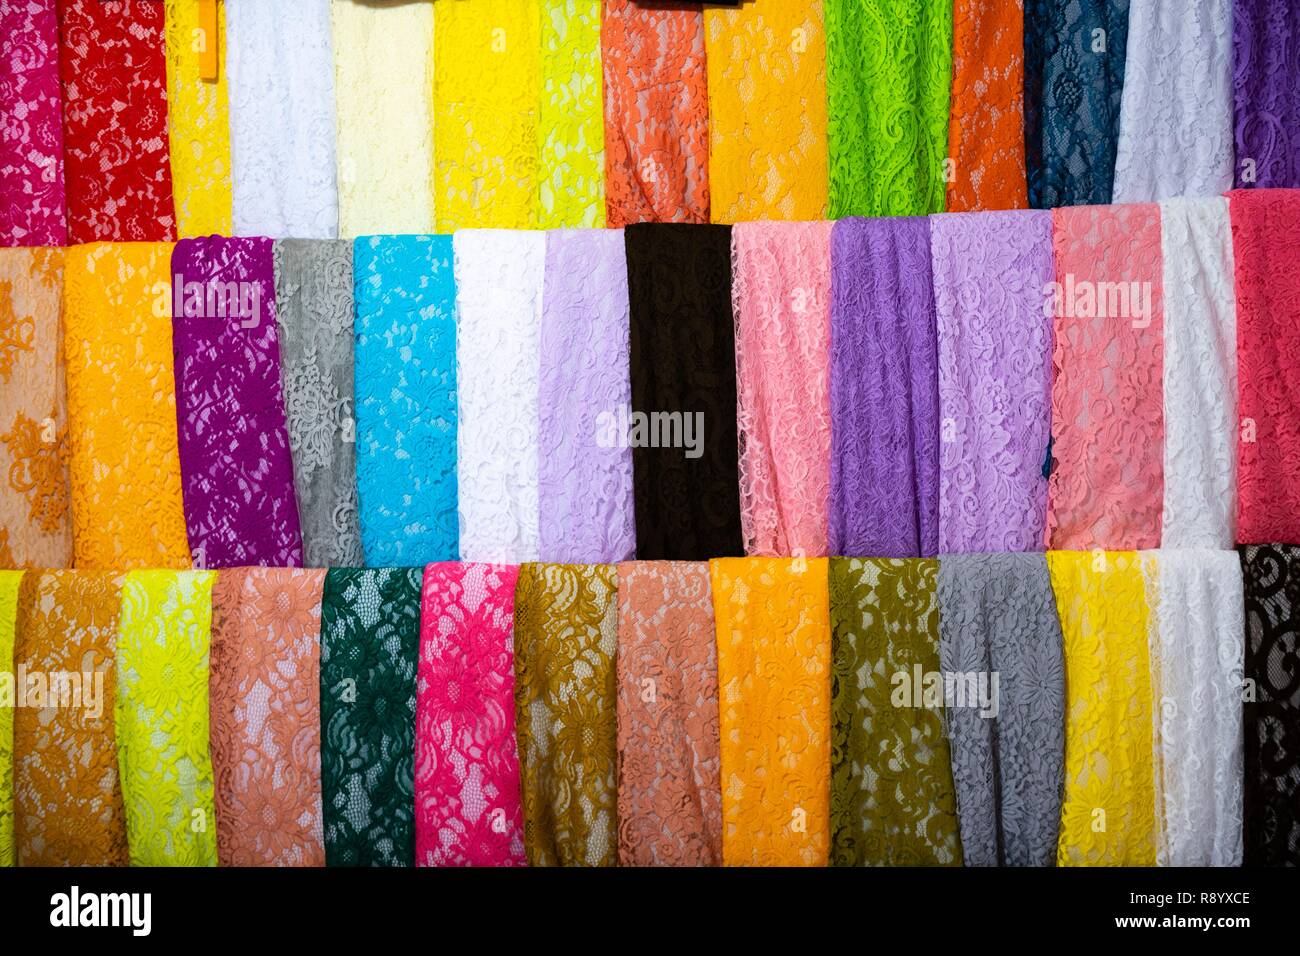 Indonesia, Bali, Ubud, fabrics at the market Stock Photo - Alamy